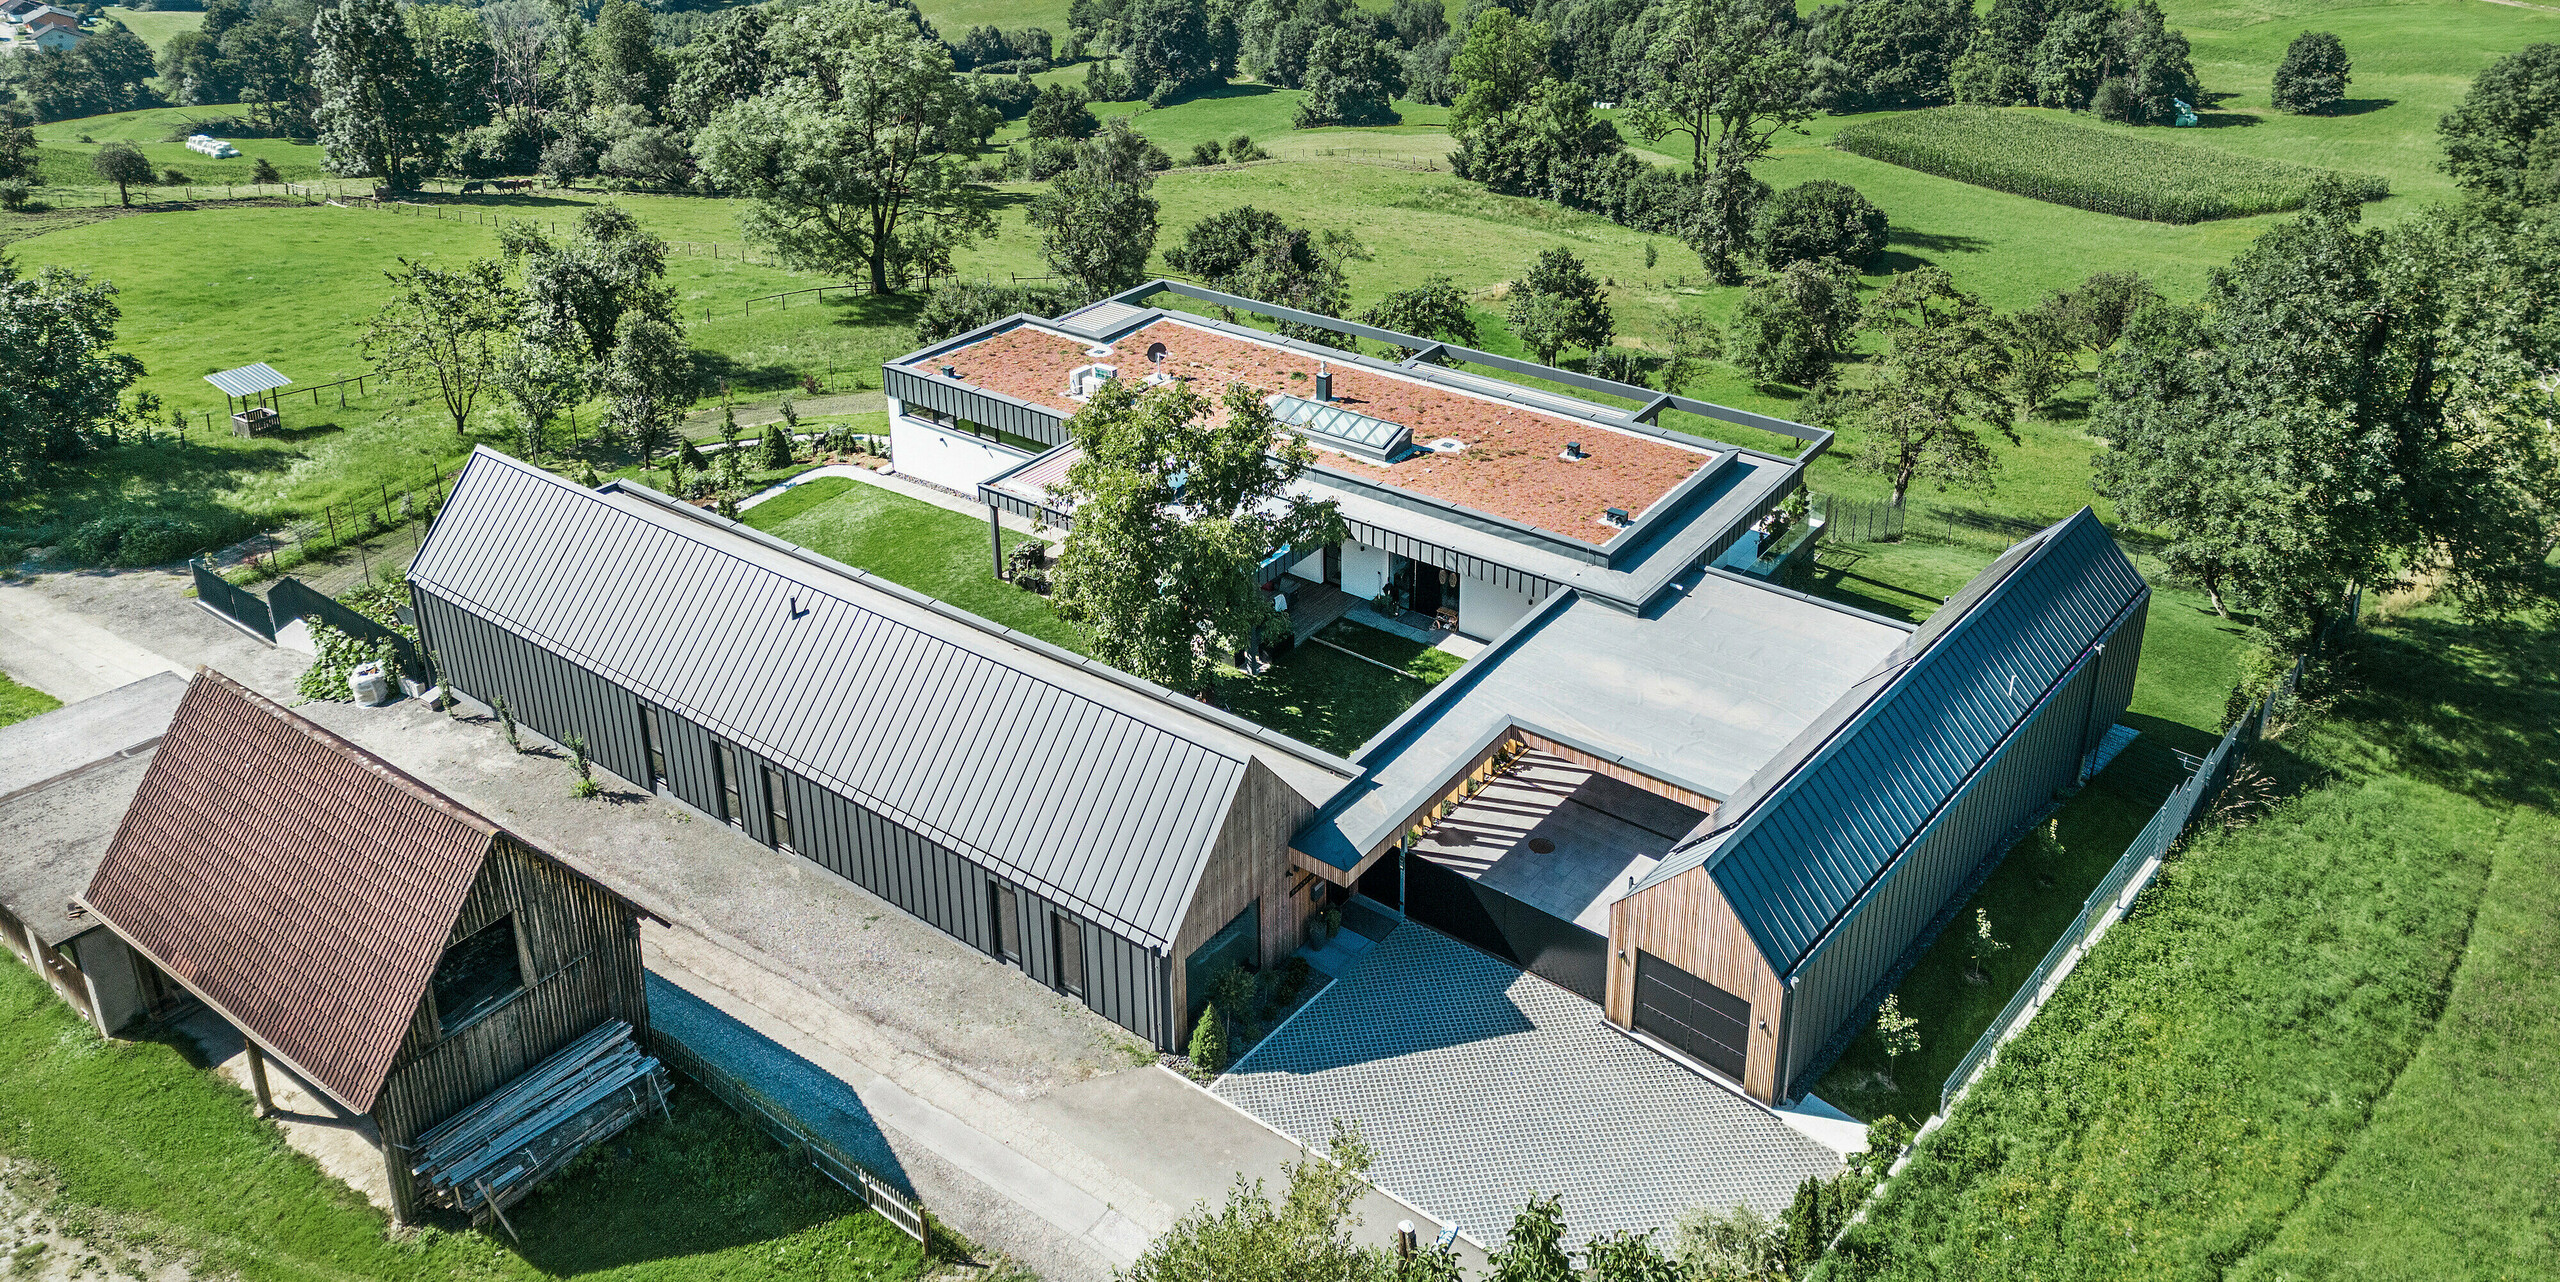 Letecký pohled na prostorný rodinný dům v kombinaci se zemědělskými halami v rakouském Pogier, zasazený do malebné krajiny s výhledem na zvlněné kopce a zelená pole. Budovy se vyznačují střešním a fasádním systémem PREFALZ v tmavě šedé barvě P.10, které vnášejí do venkovského prostředí moderní estetiku. Uspořádání budov vytváří příjemnou atmosféru dvora, zatímco FV panely na jedné ze střech odrážejí závazek domova k udržitelnosti a energetické účinnosti.